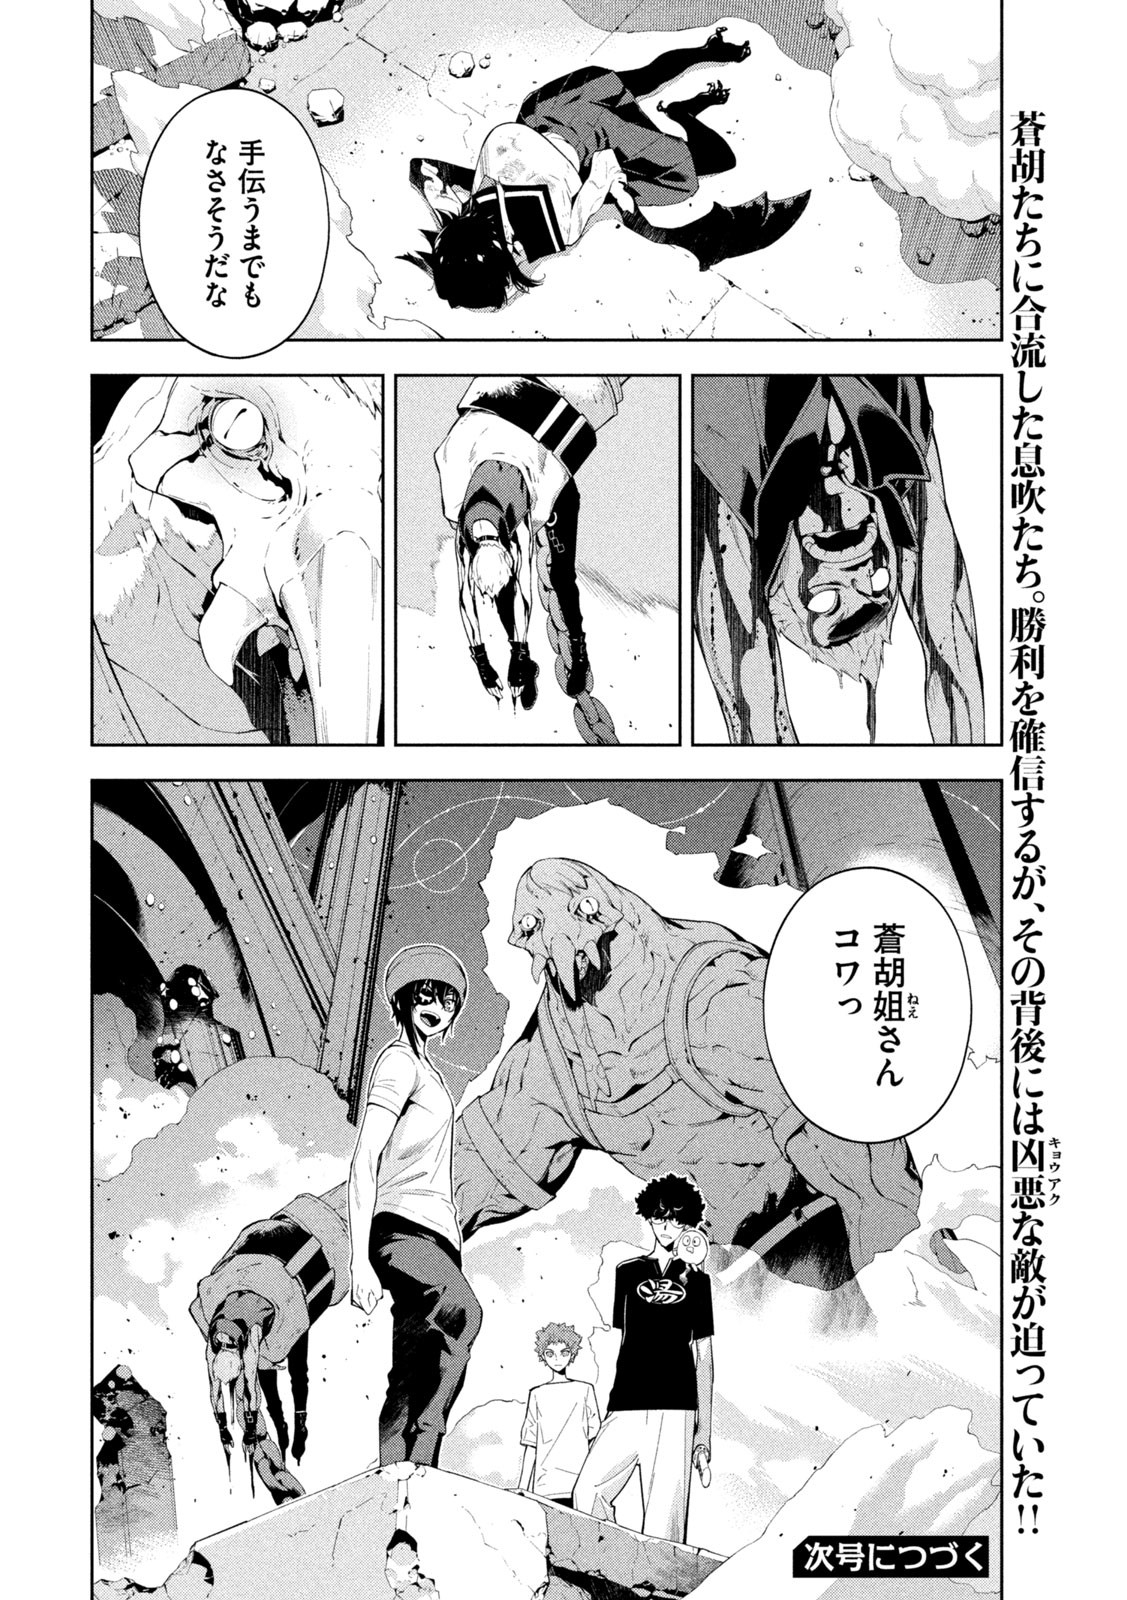 Seirei Tsukai – Chito no Jinshi - Chapter 23 - Page 8